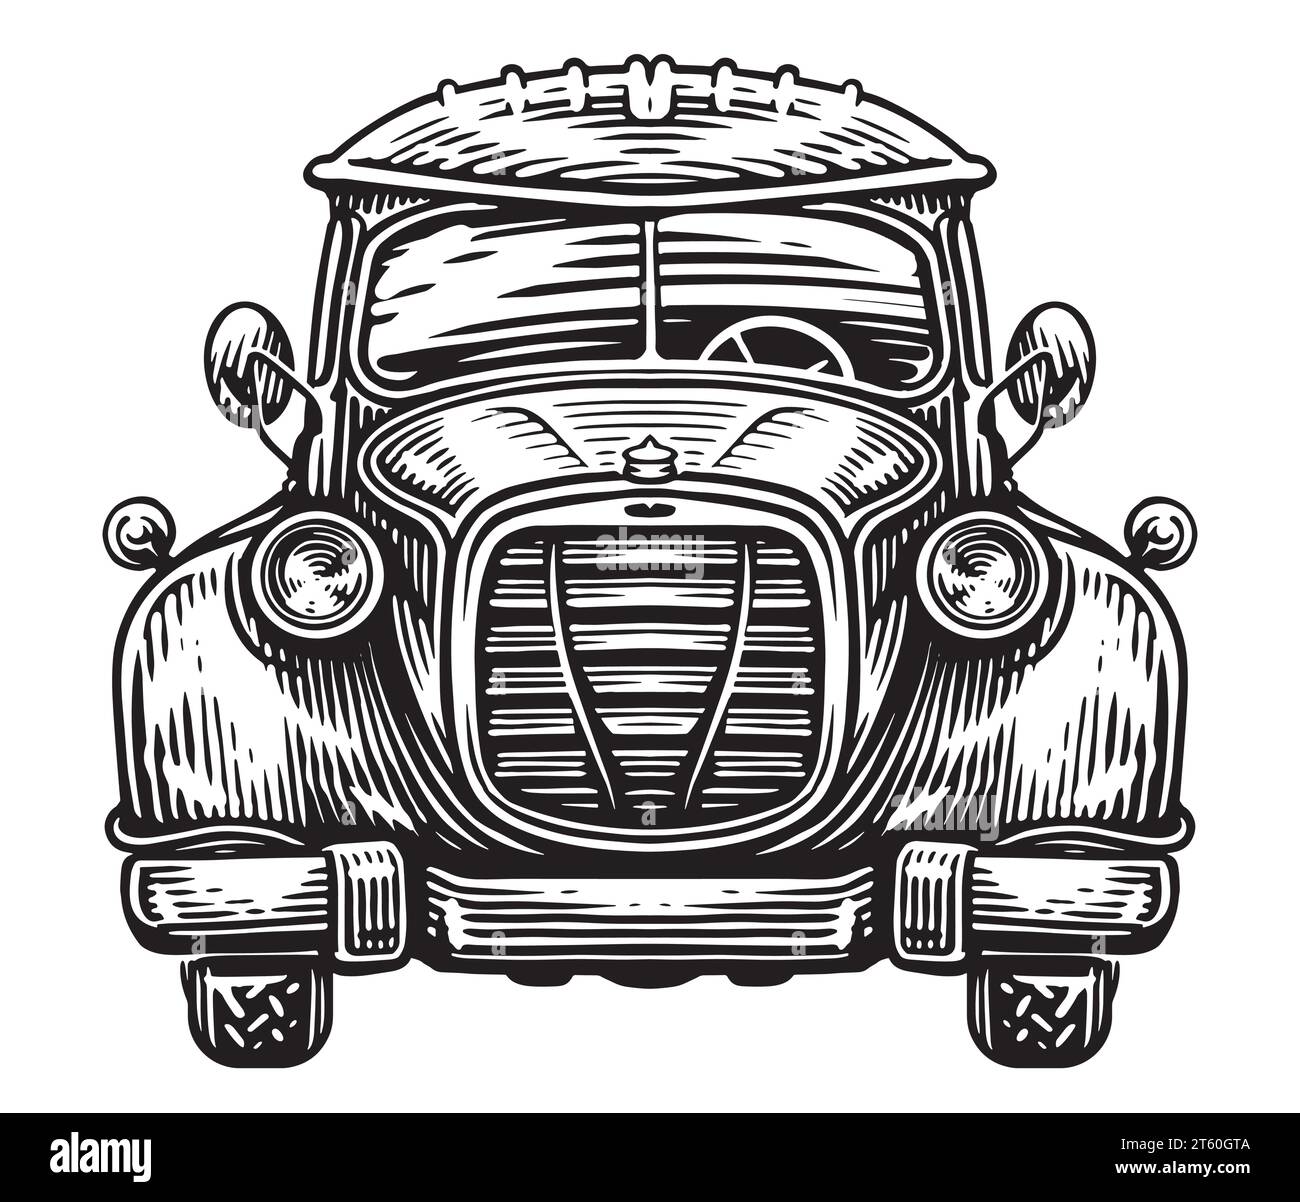 Handgezeichnete Vorderansicht eines Retro-Autos im Schwarz-weiß-Stil. Vintage-Transport, Skizze Vektor-Illustration Stock Vektor